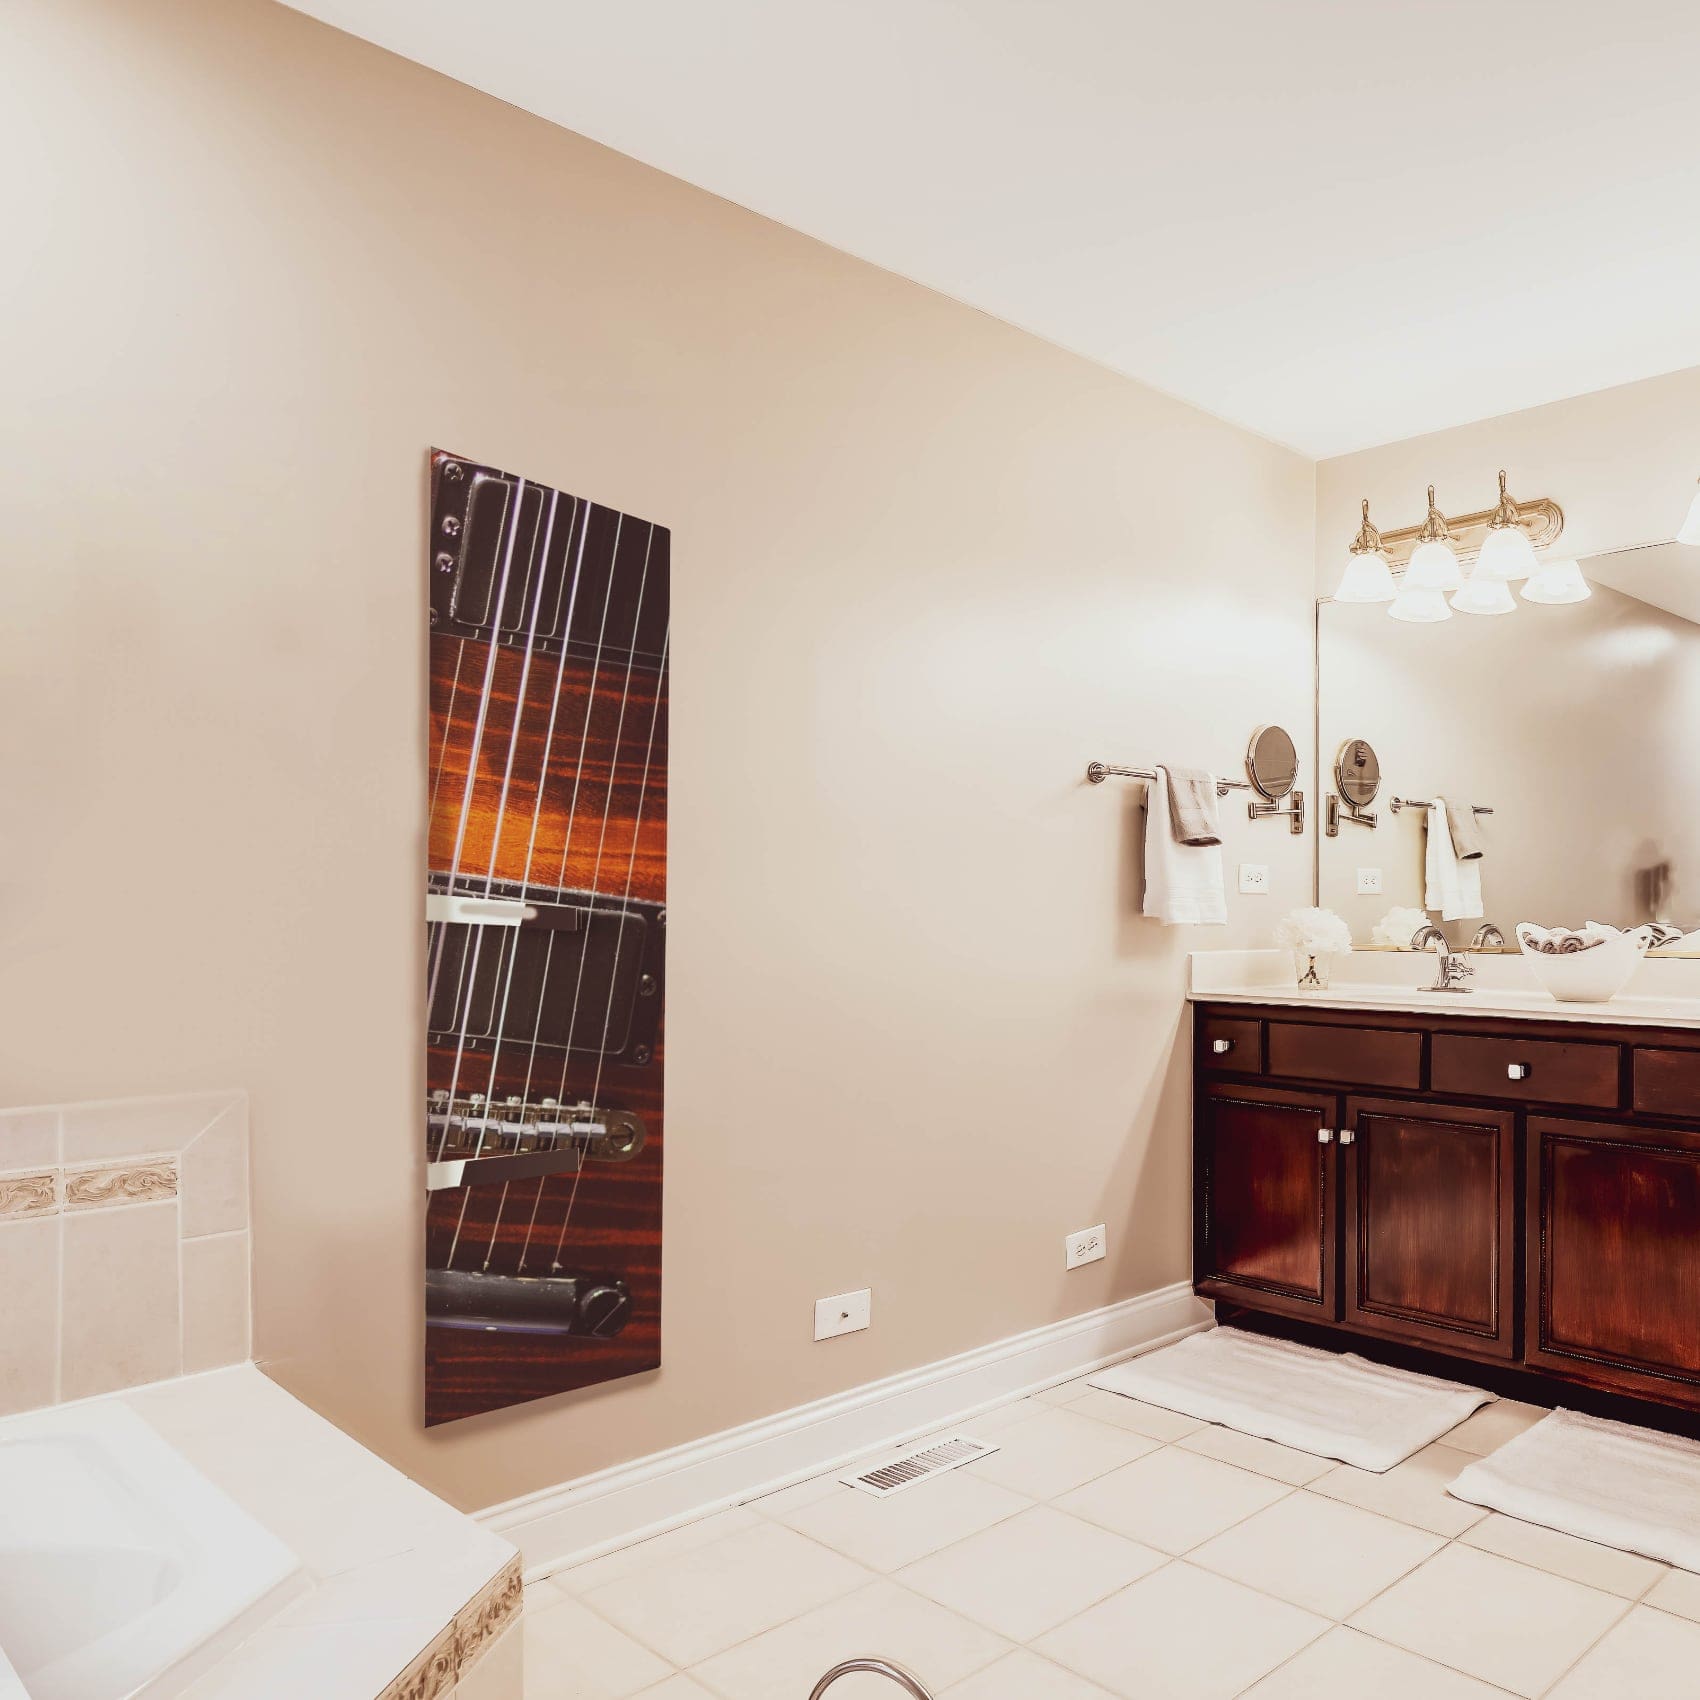 muurpaneel badkamer verwarming elektrische hnaddoekdroger handdoekverwarmer handdoekrek verwarming badkamer hasselt